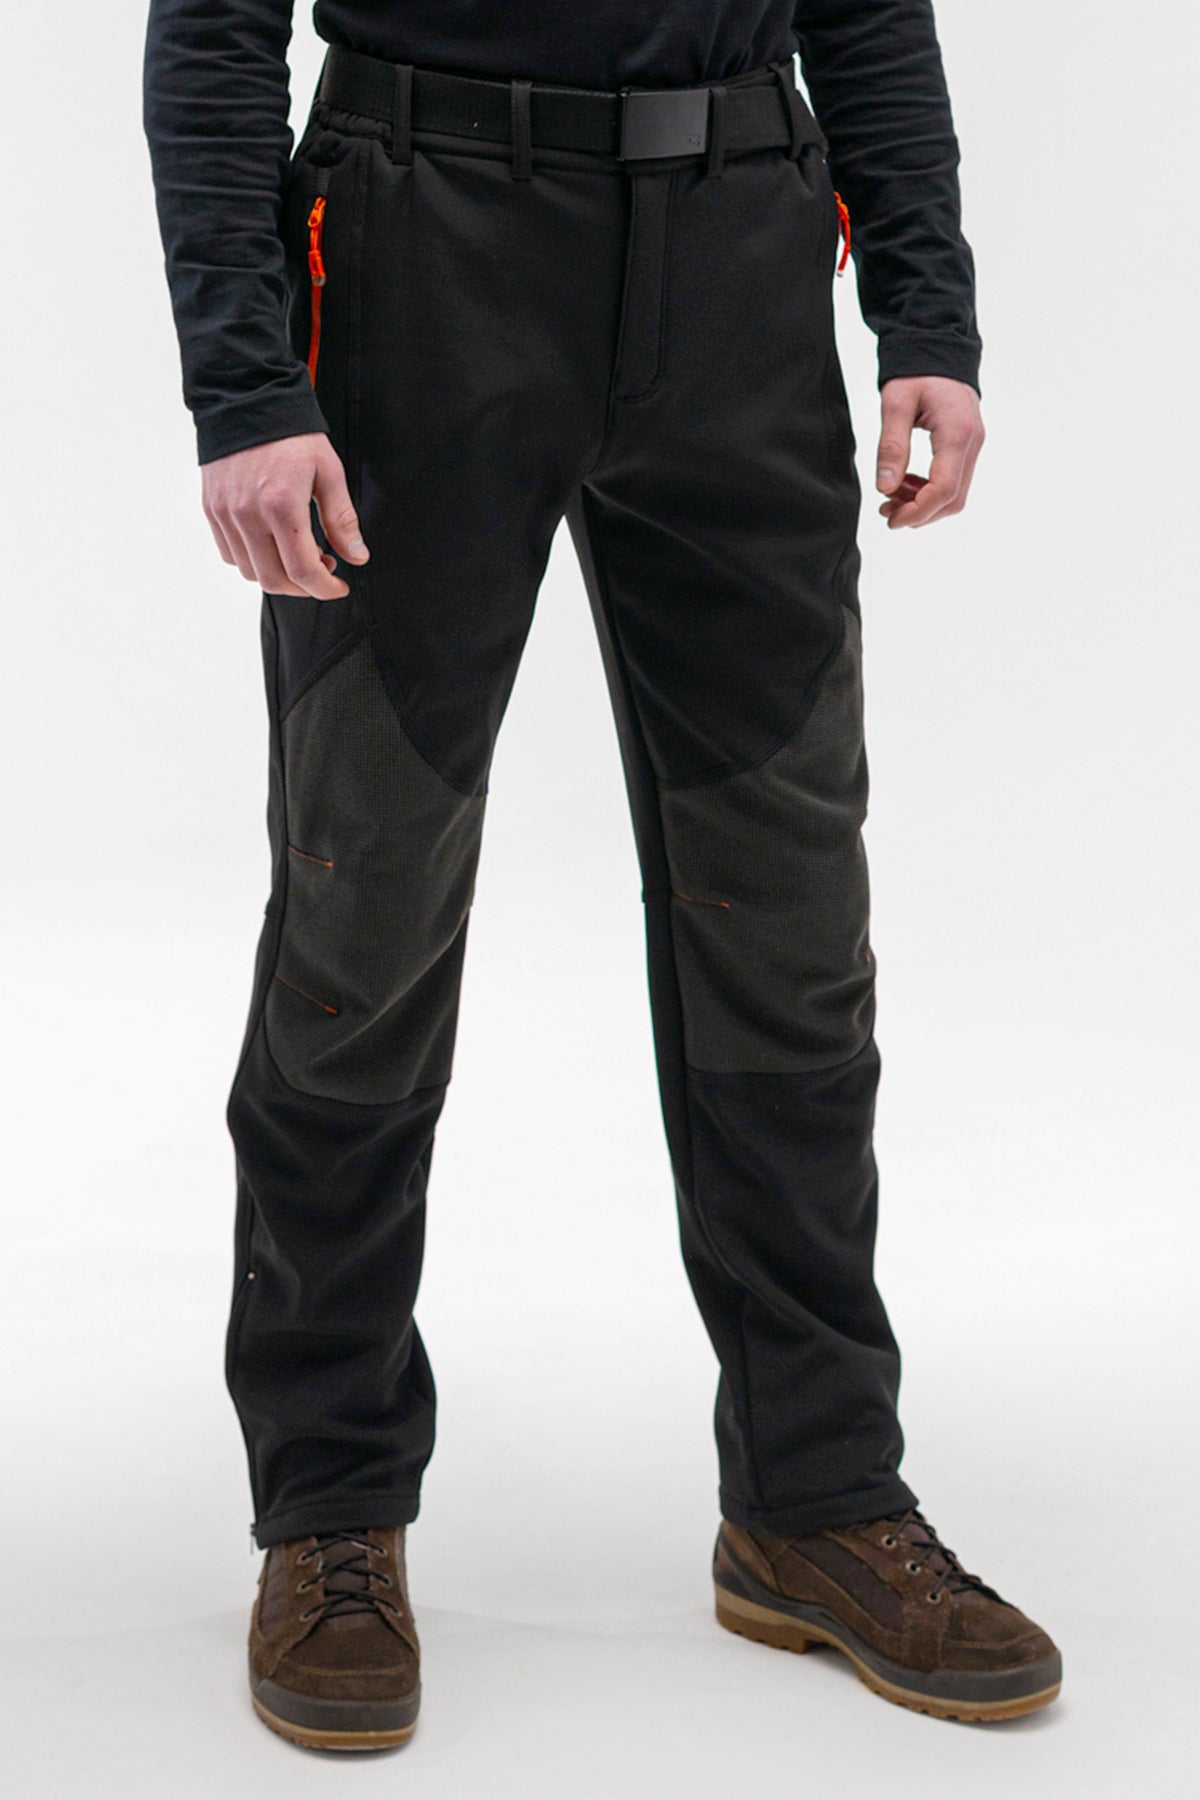 Men's Adventure Water Resistant Pants – Northbound Gear